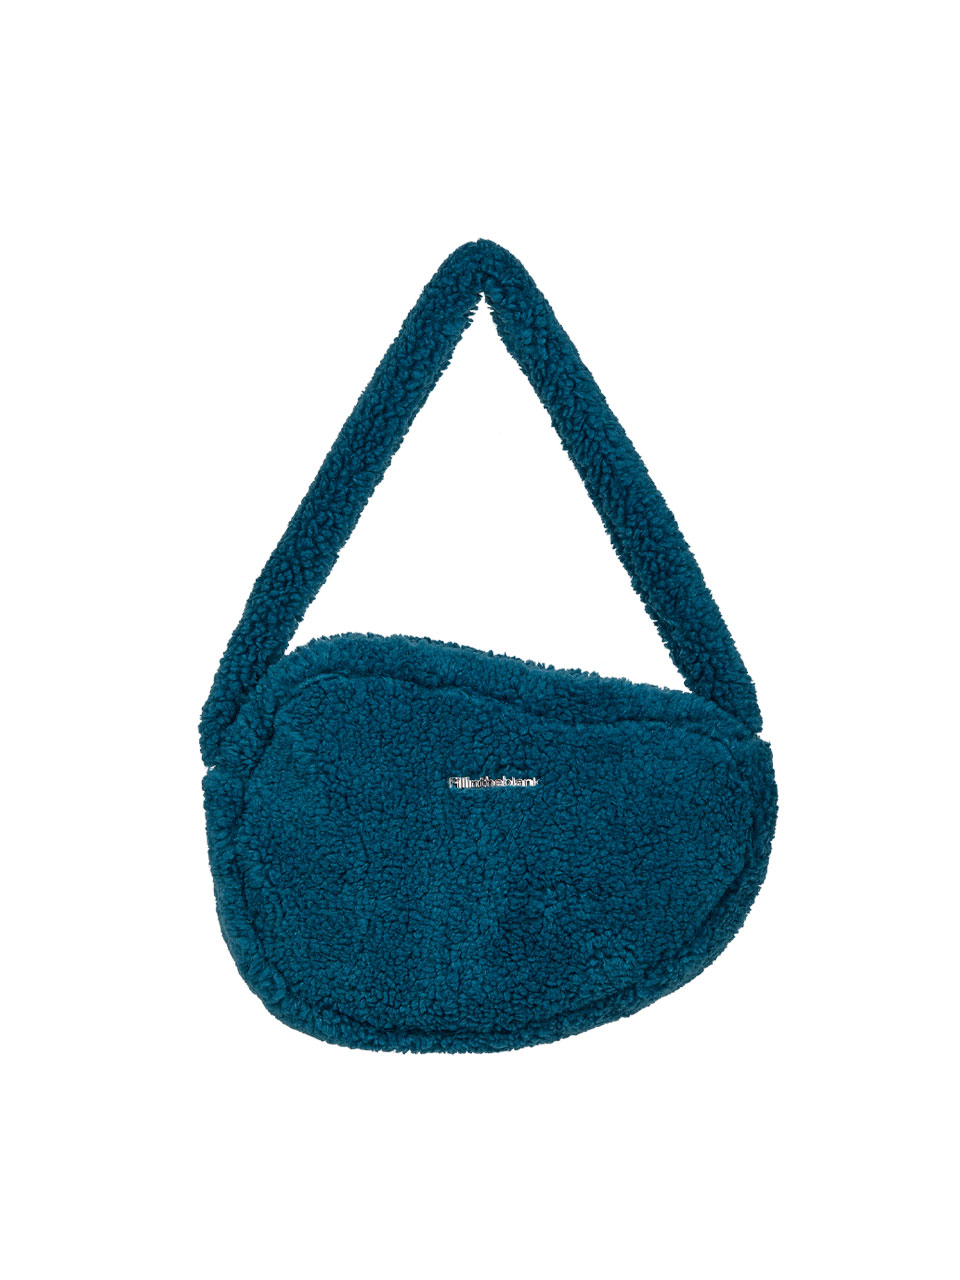 Furry Shoulder Bag (blue)